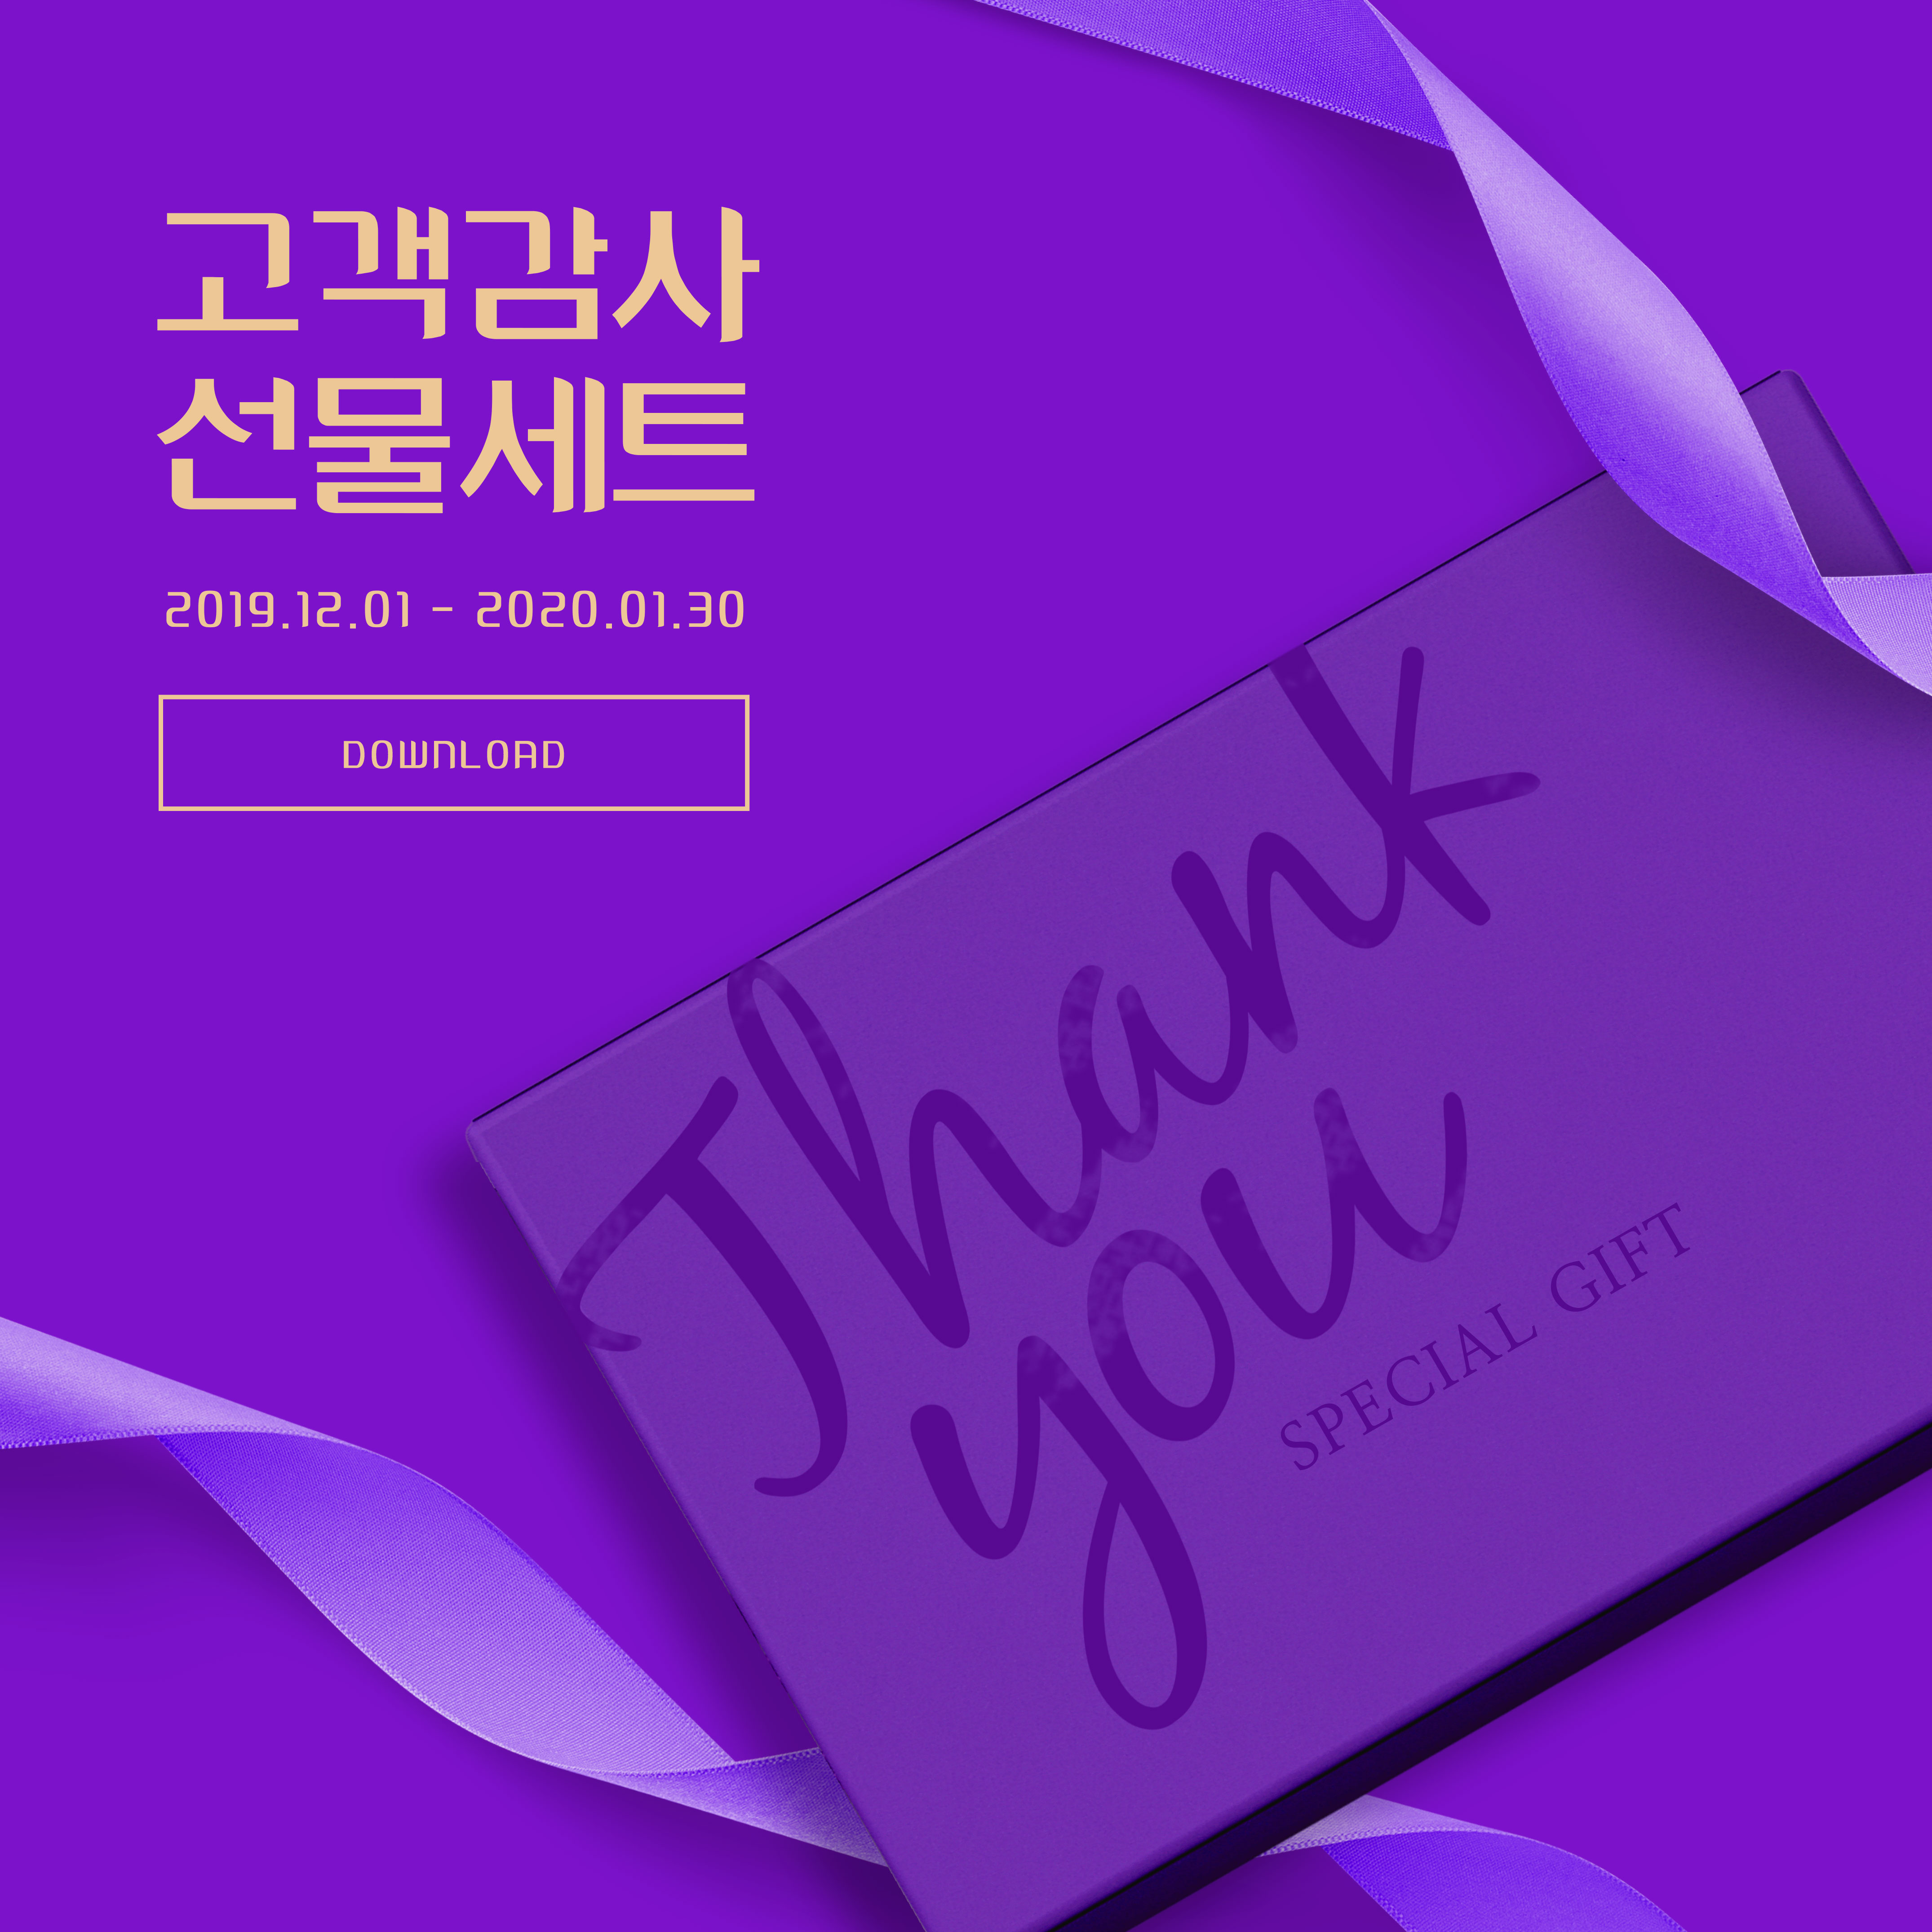 周年纪念活动礼品回馈主题深紫色海报PSD素材16设计网精选素材插图